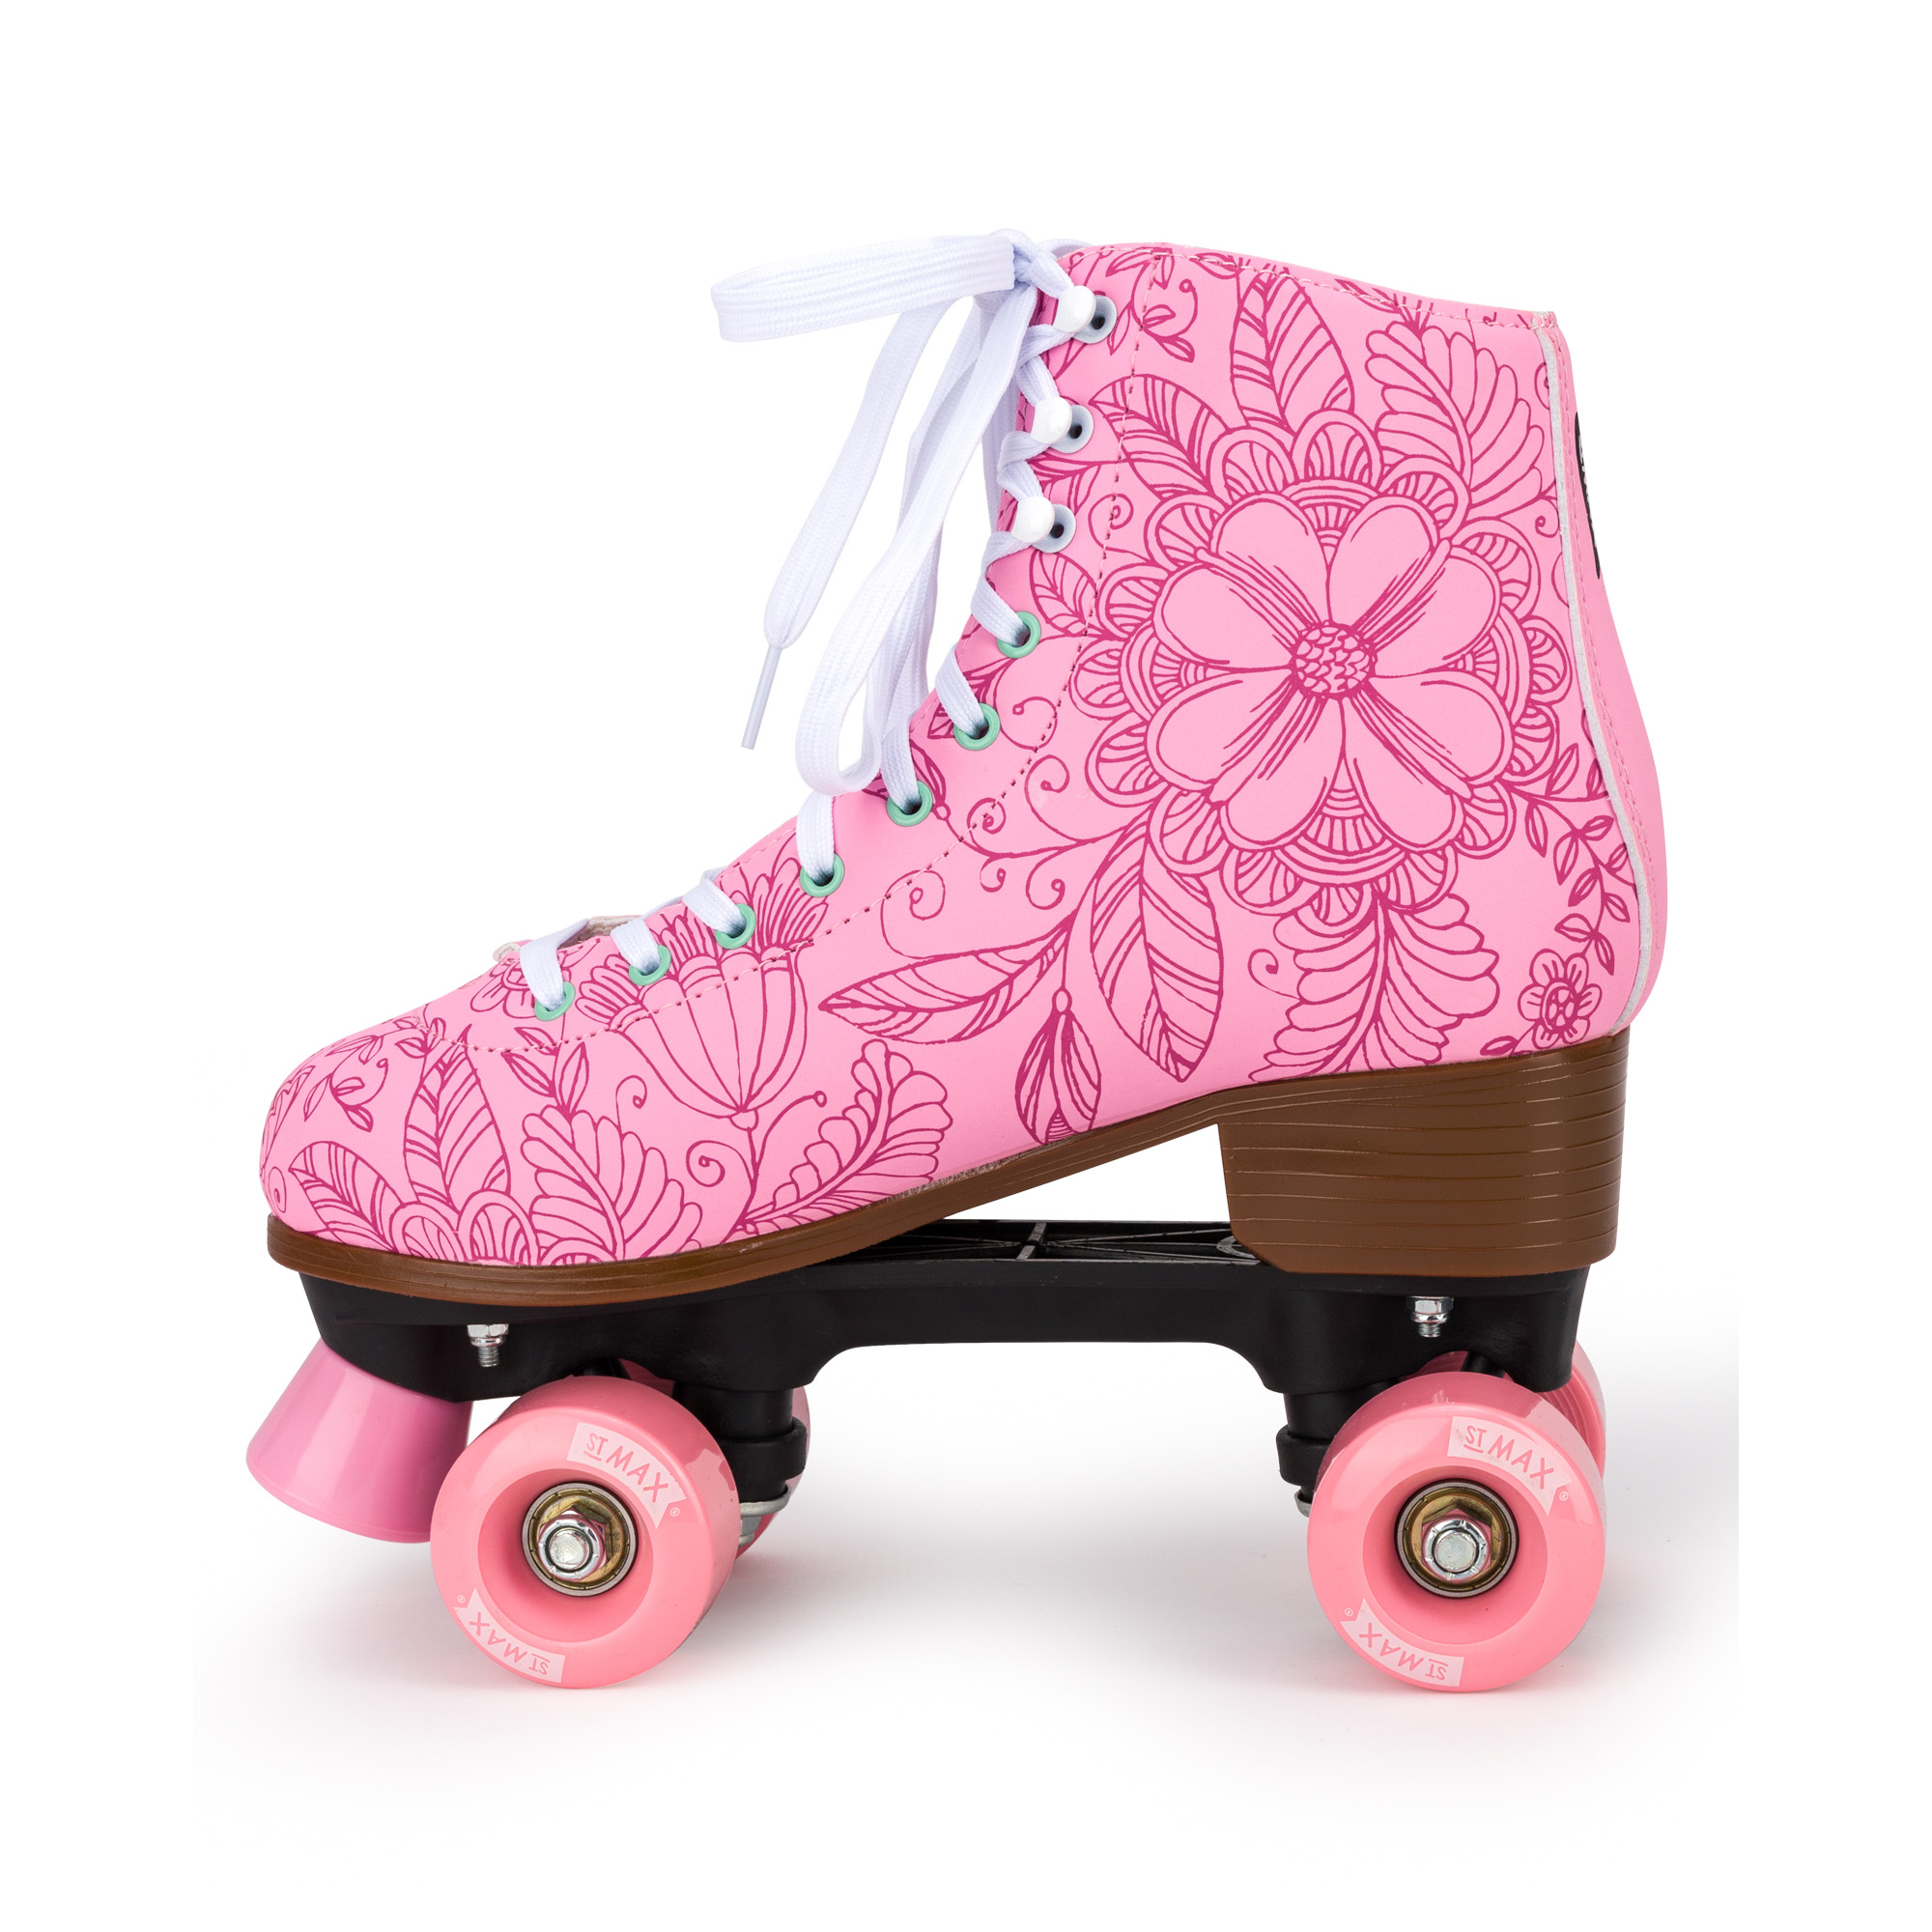 Роликовые коньки SXRide Roller skate YXSKT04PNFL38 цвет розовые с цветочками размер 38 - фото 3